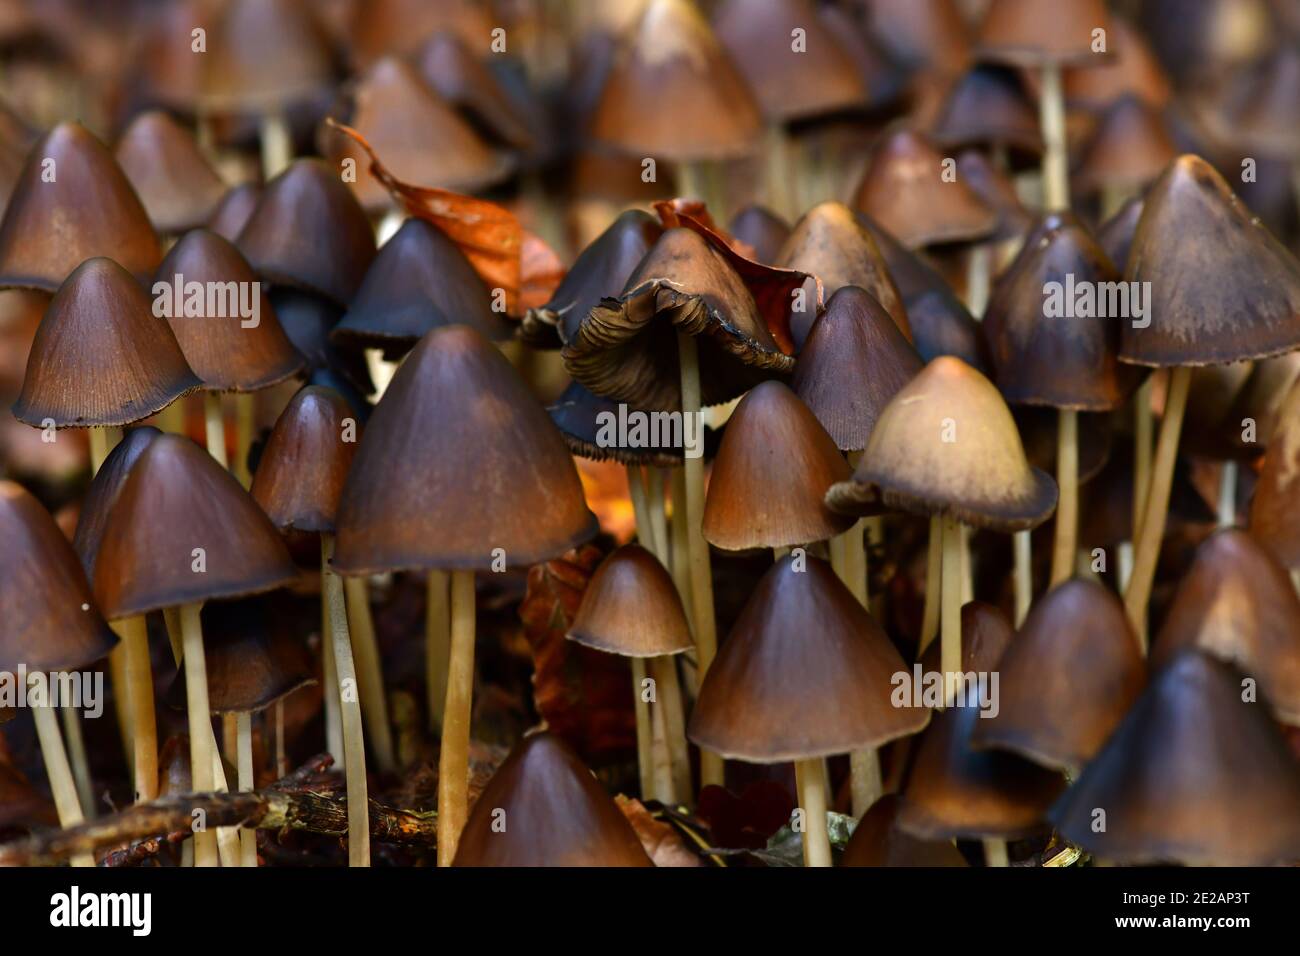 Groupe de champignons sauvages Psathyrella spadiceogrisea fructification en automne. Autriche, Europe Banque D'Images